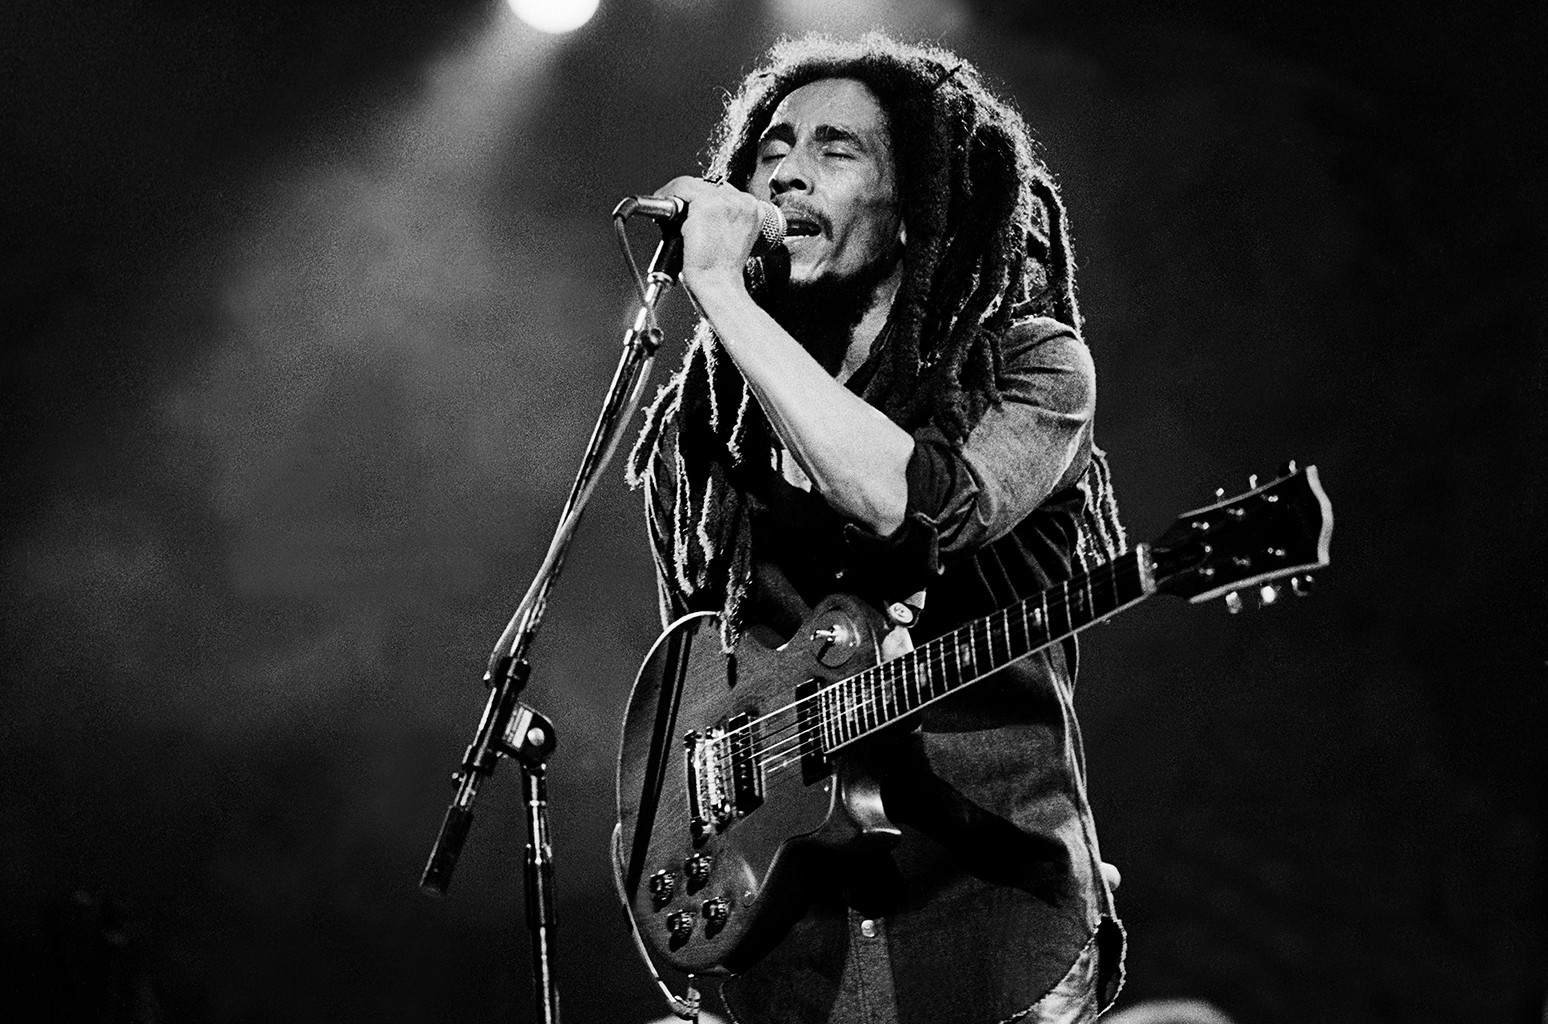 Βρέθηκαν χαμένες κασέτες με ζωντανές ηχογραφήσεις του Bob Marley